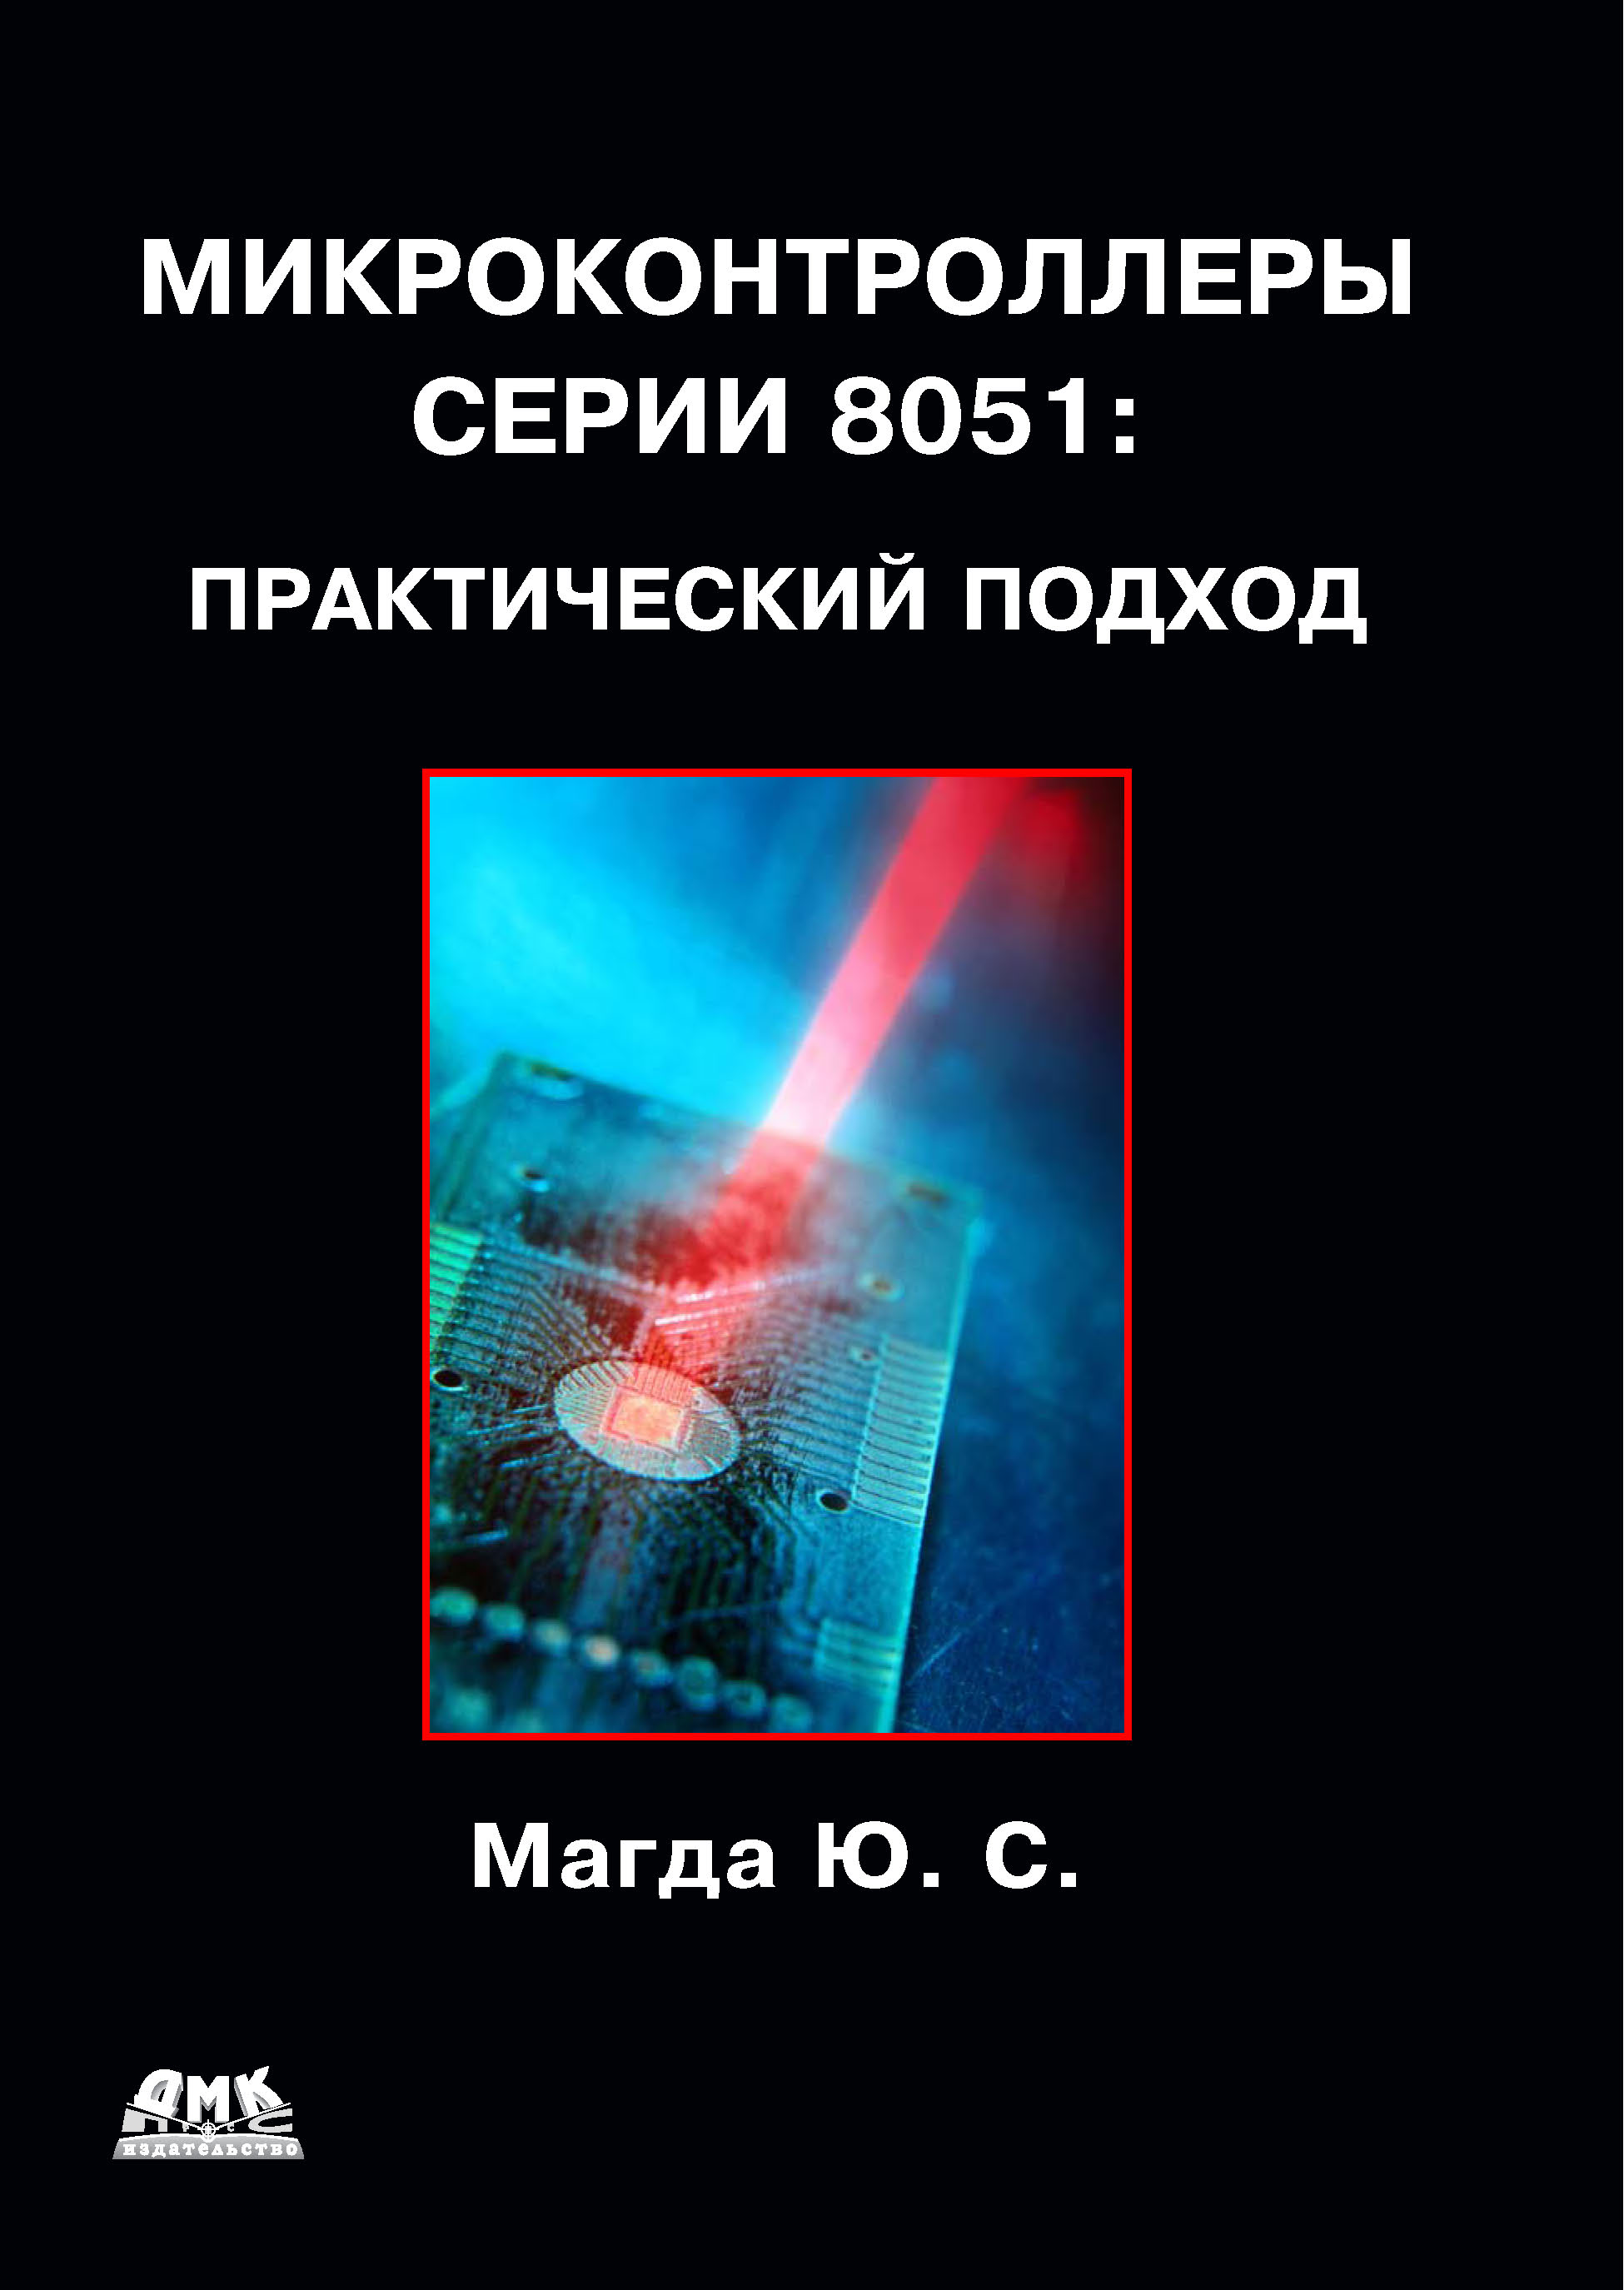 Книга  Микроконтроллеры серии 8051: практический подход созданная Юрий Магда может относится к жанру программирование, радиоэлектроника, техническая литература, электроника. Стоимость электронной книги Микроконтроллеры серии 8051: практический подход с идентификатором 6283806 составляет 239.00 руб.